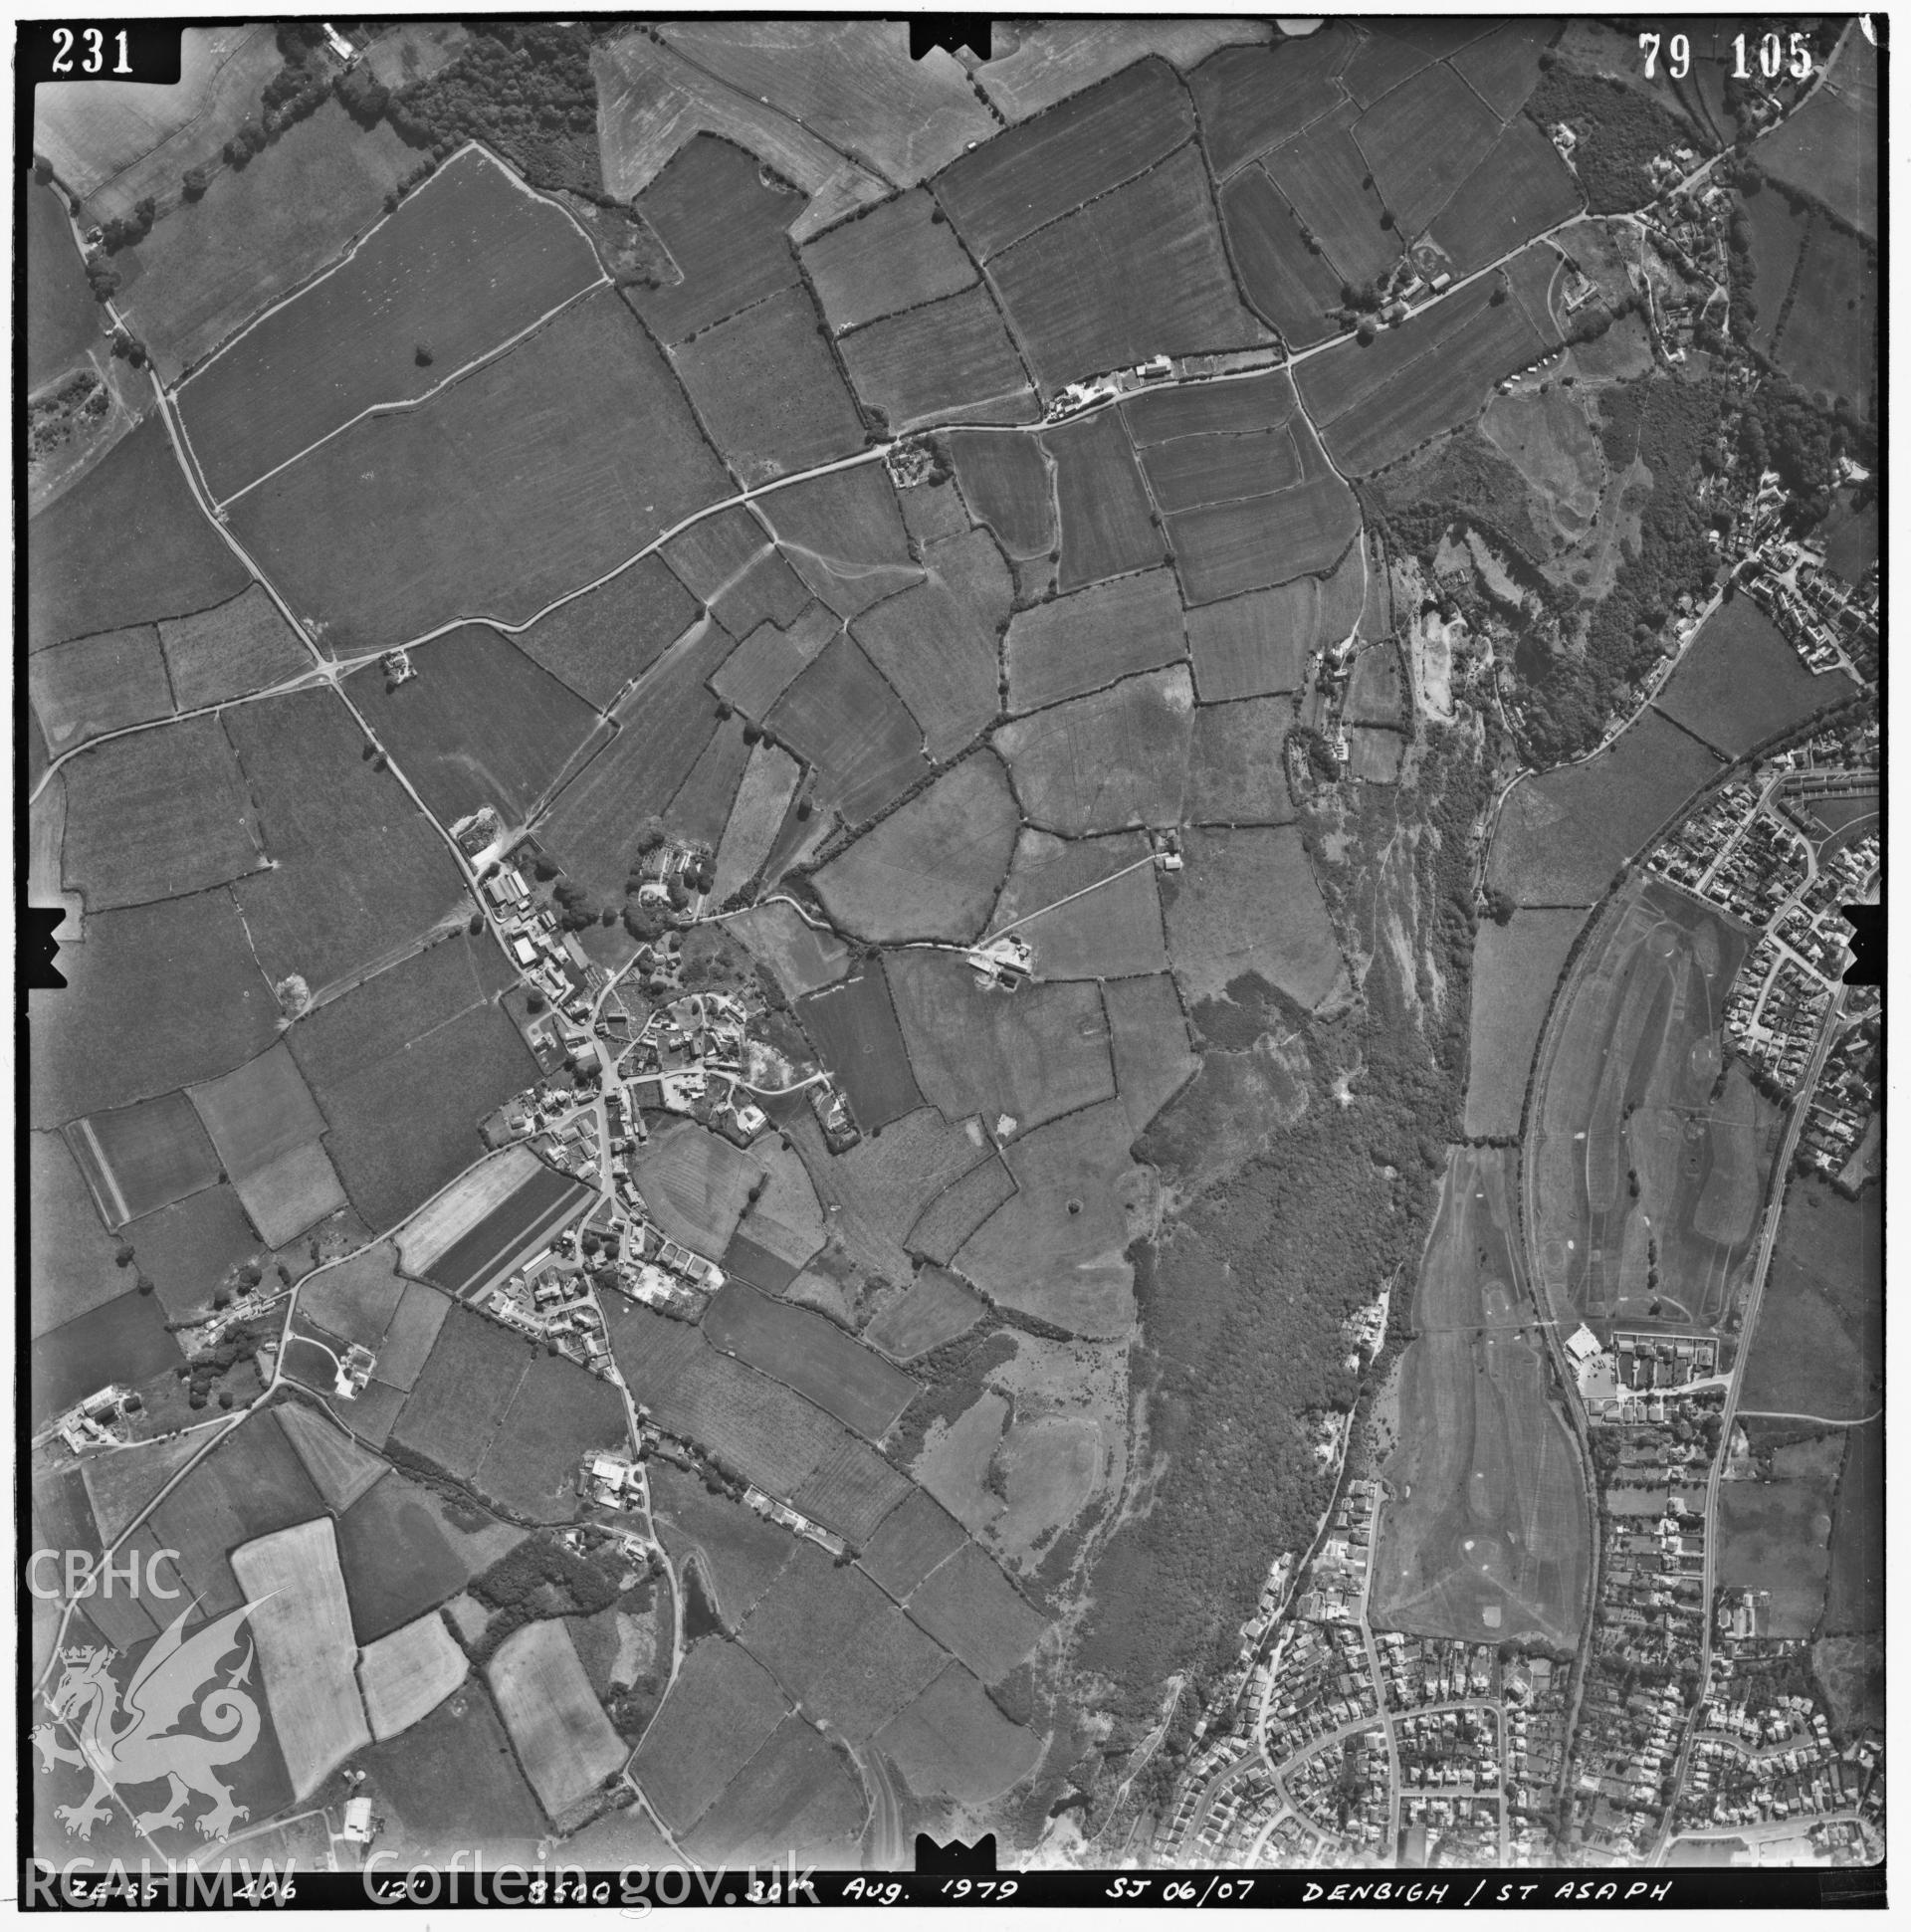 Digitized copy of an aerial photograph showing Gwaenysgor area, Flintshire SJ0781, taken by Ordnance Survey, 1979.